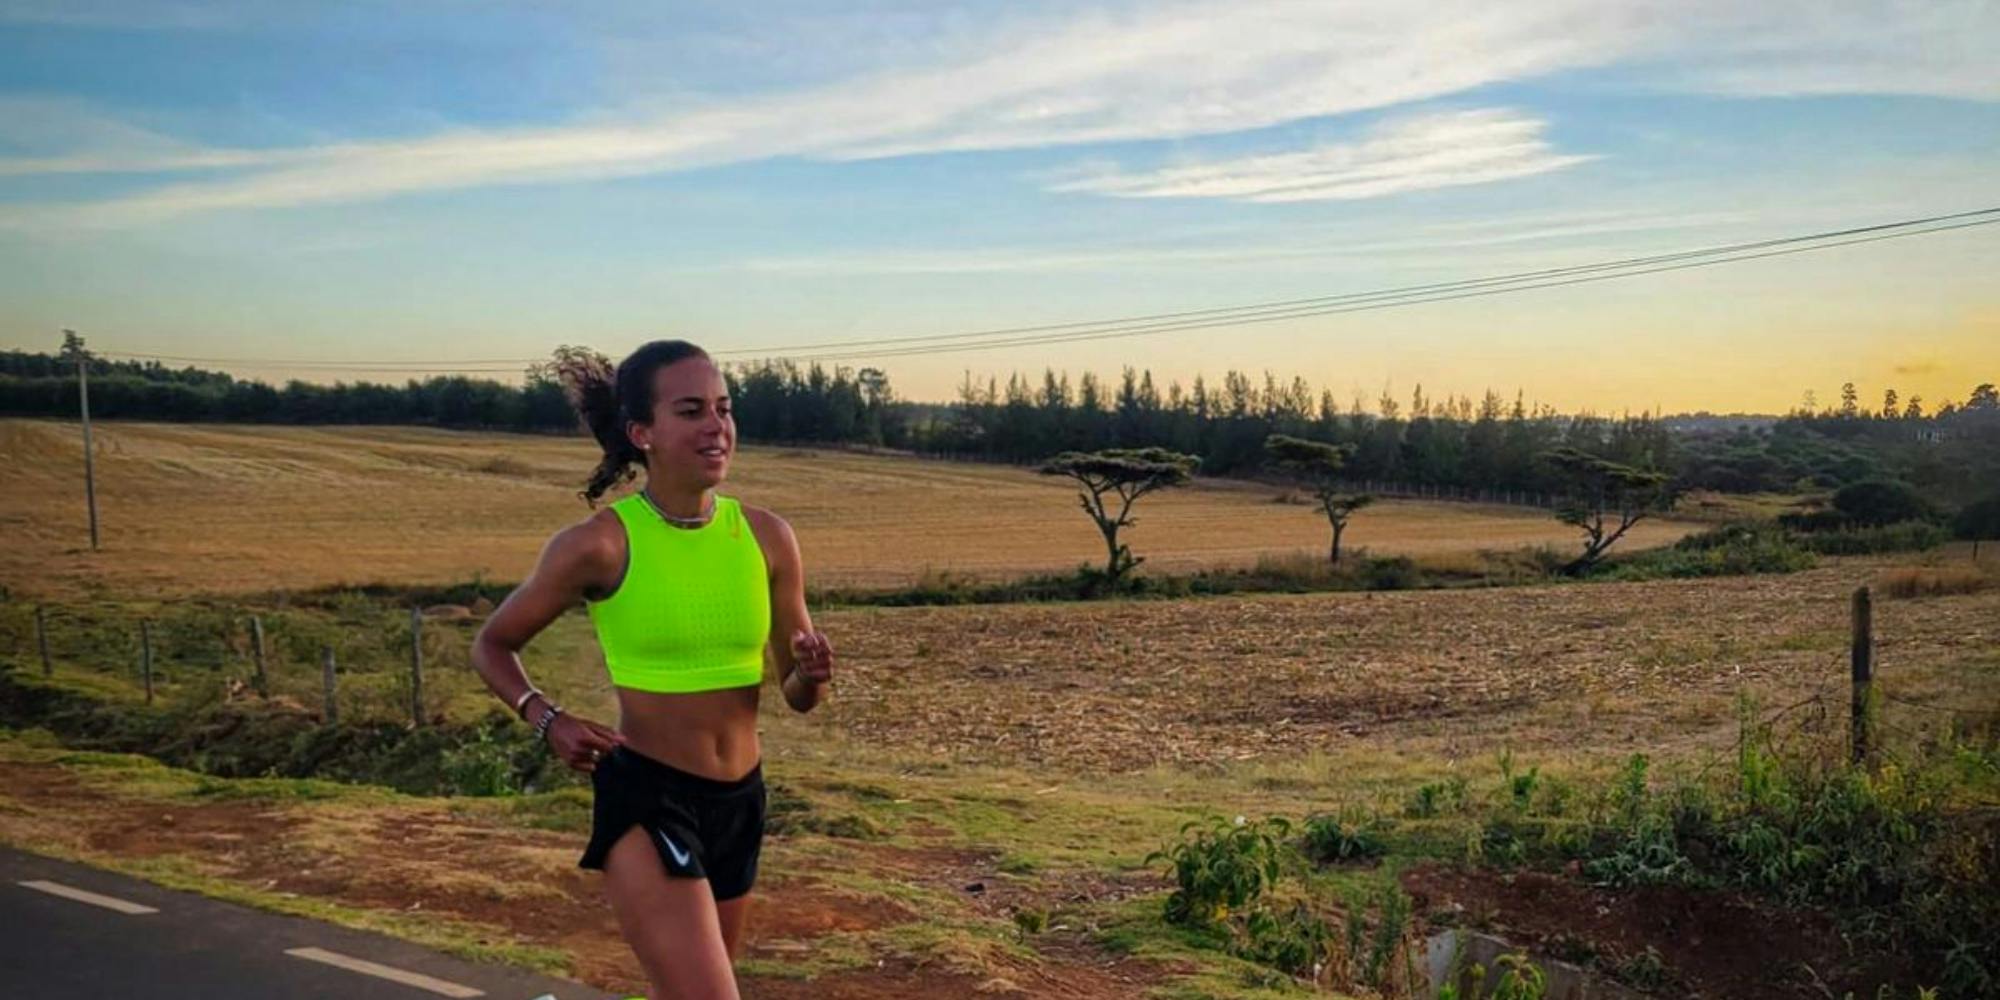 Η 26χρονη σύμβουλος επενδύσεων από το Λονδίνο στο Ίτεν κυνηγάει το όνειρο της - Πως από χόμπι το τρέξιμο έγινε η παράλληλη «δουλειά»